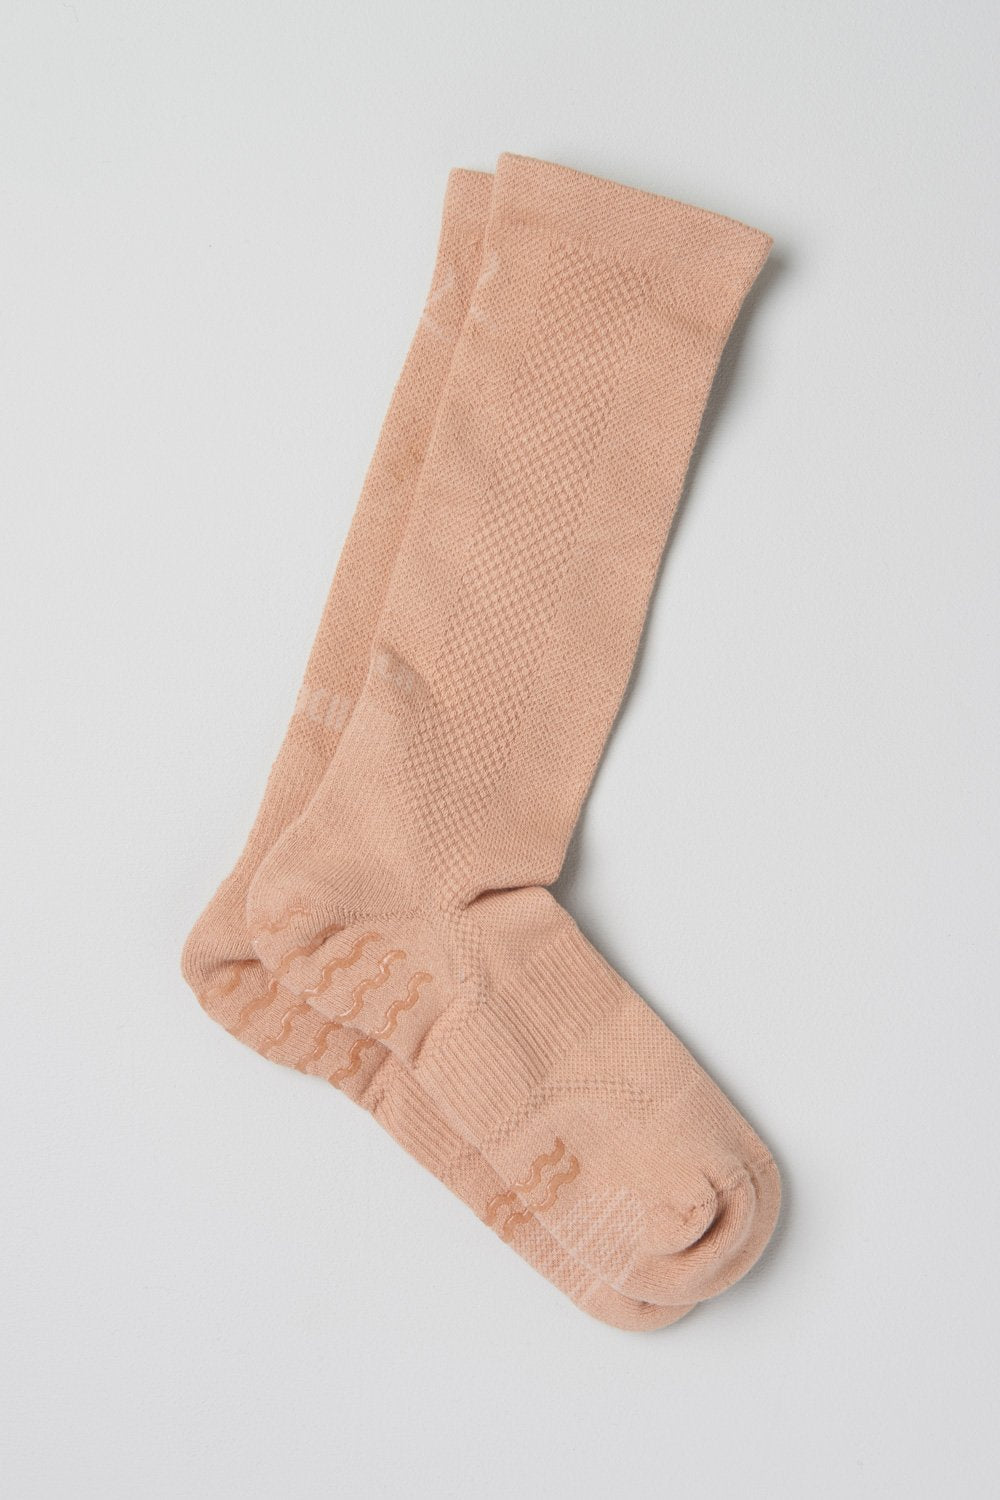 BLOCHSOX (A1000) Bloch Contemporary Dance Sock (Black, Sand, Cocoa